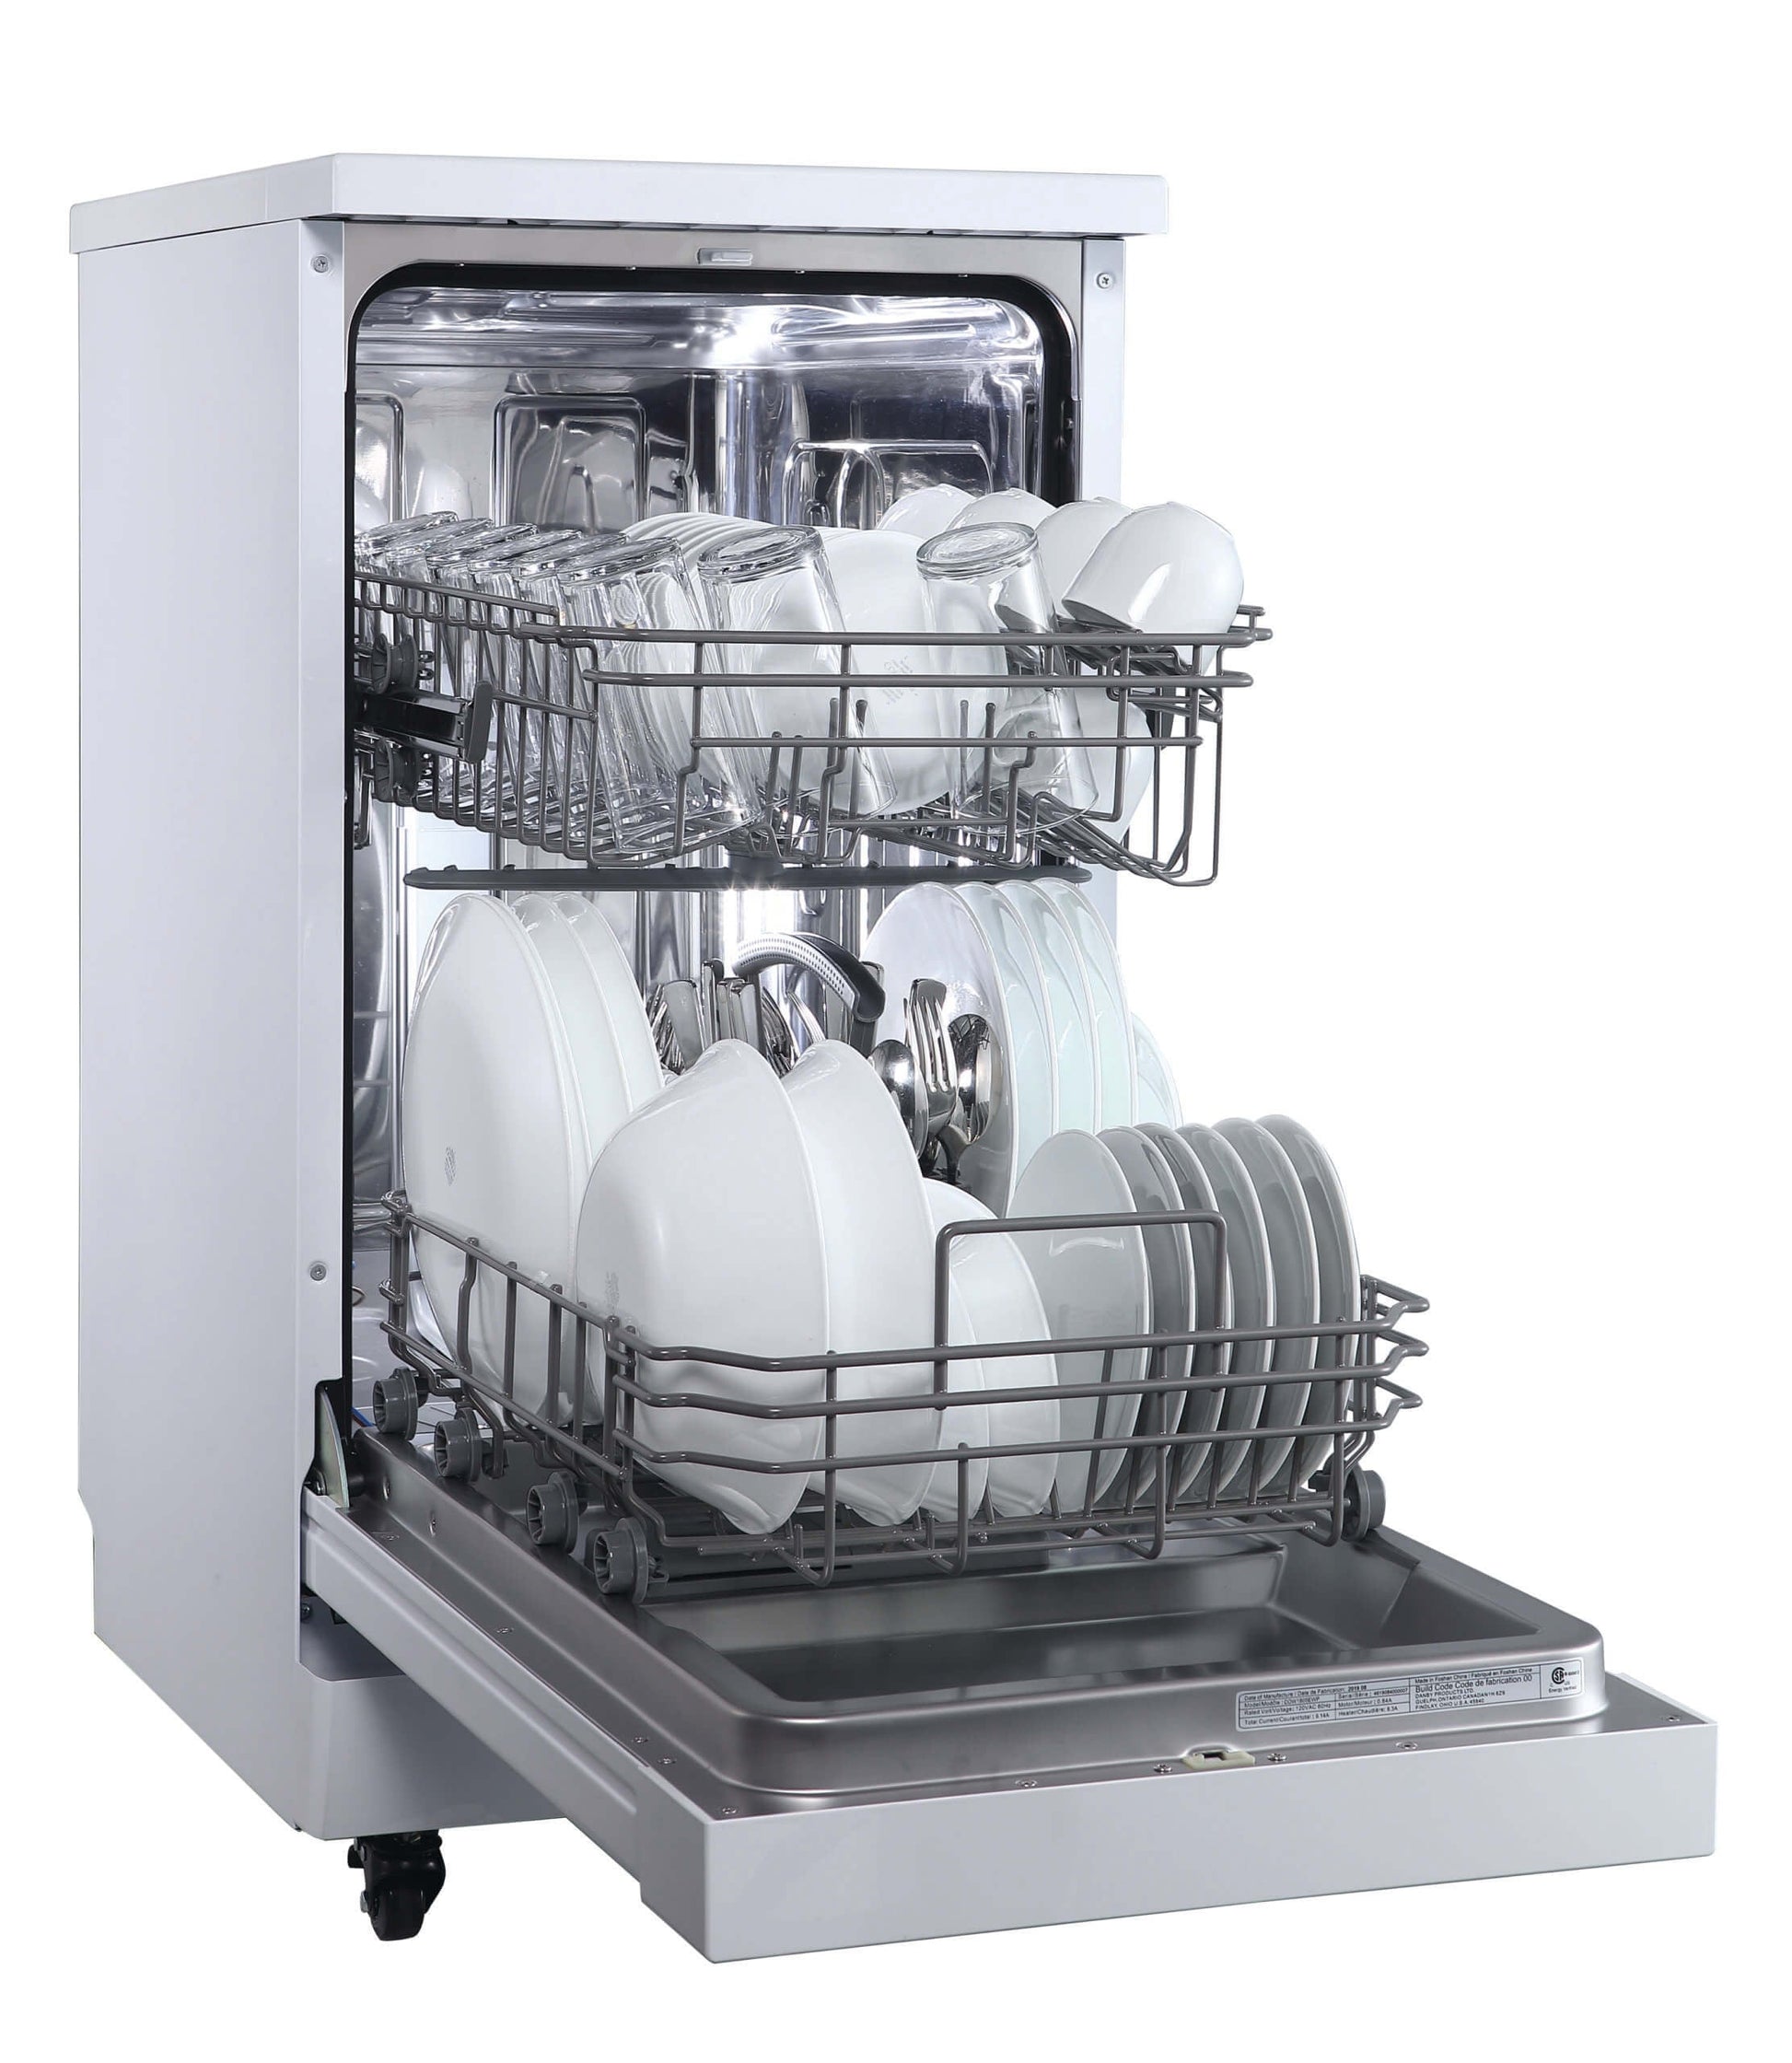 Danby 18" White Portable Dishwasher - DDW1805EWP